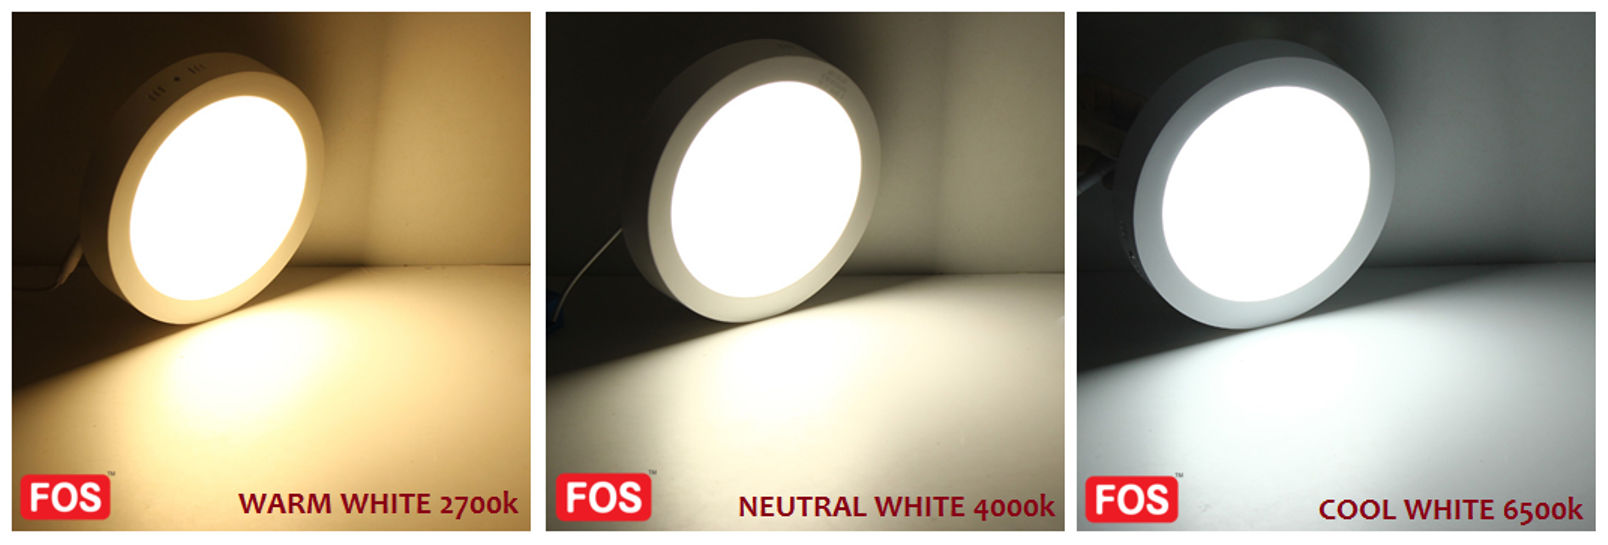 FOS Surface LED Panel Light 24W   2400 LUMENS (6500k-4000k-2700k)